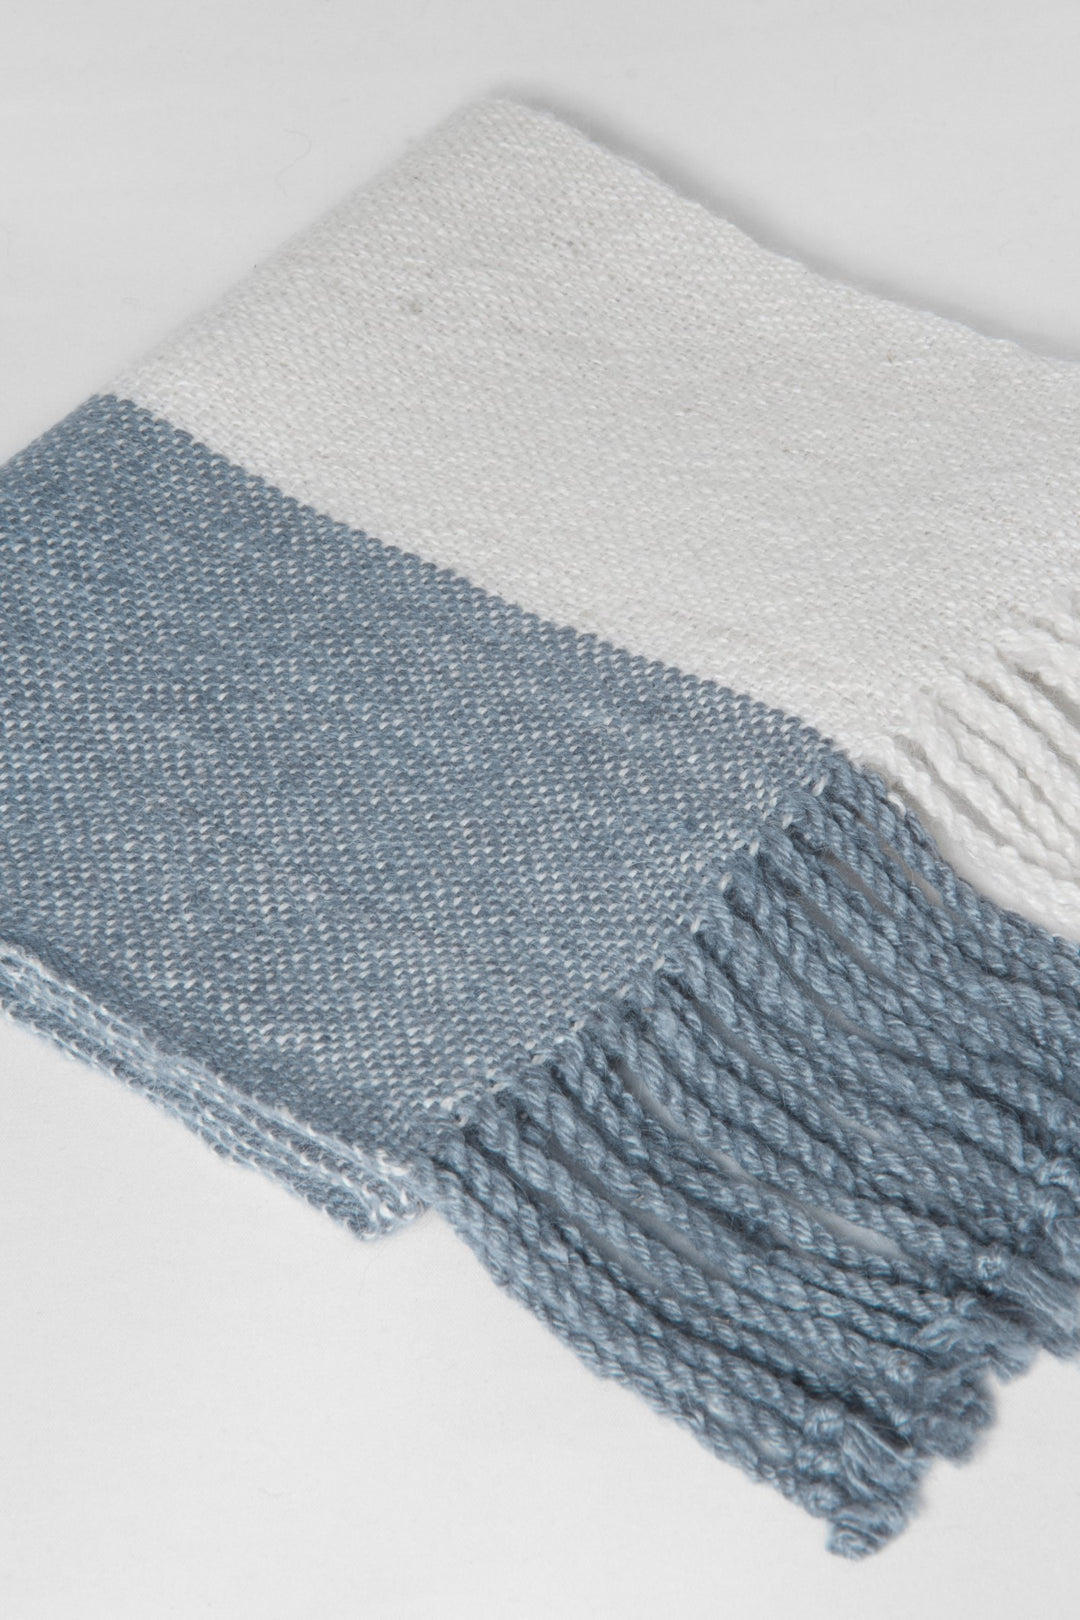 Weißer und blauer Schal aus Alpaka Wolle mit Streifenmuster, gefaltet